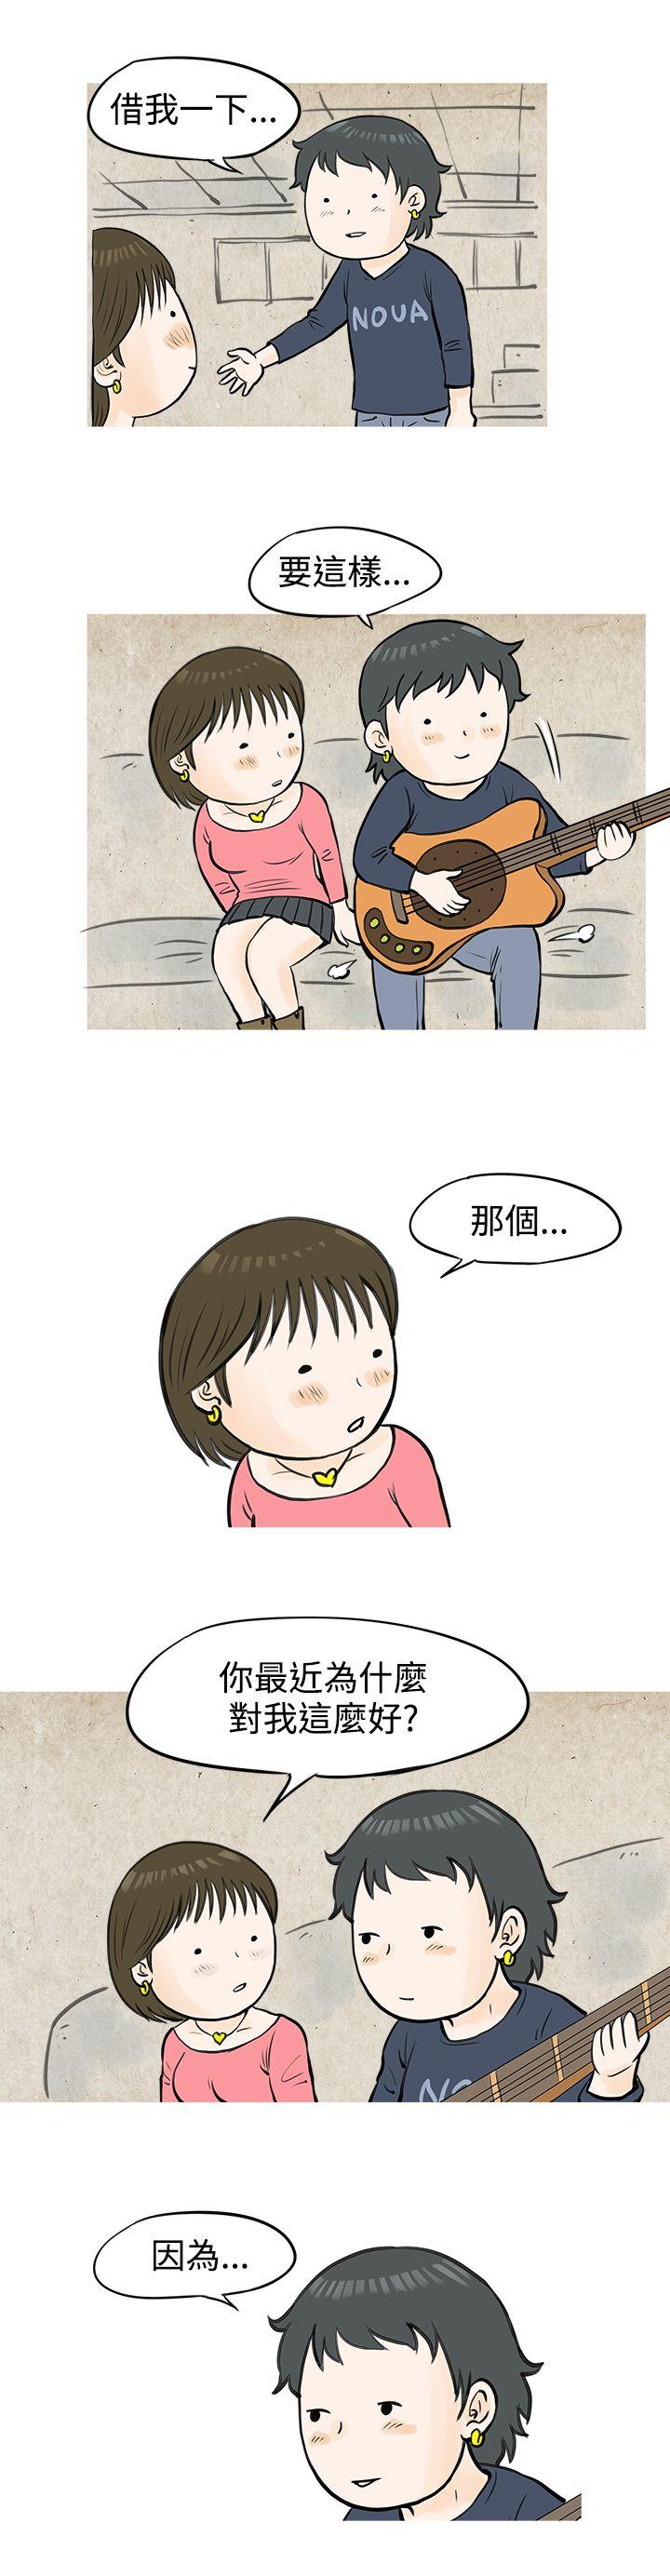 韩国污漫画 秘密Story 发生在热音社的小故事(下) 10